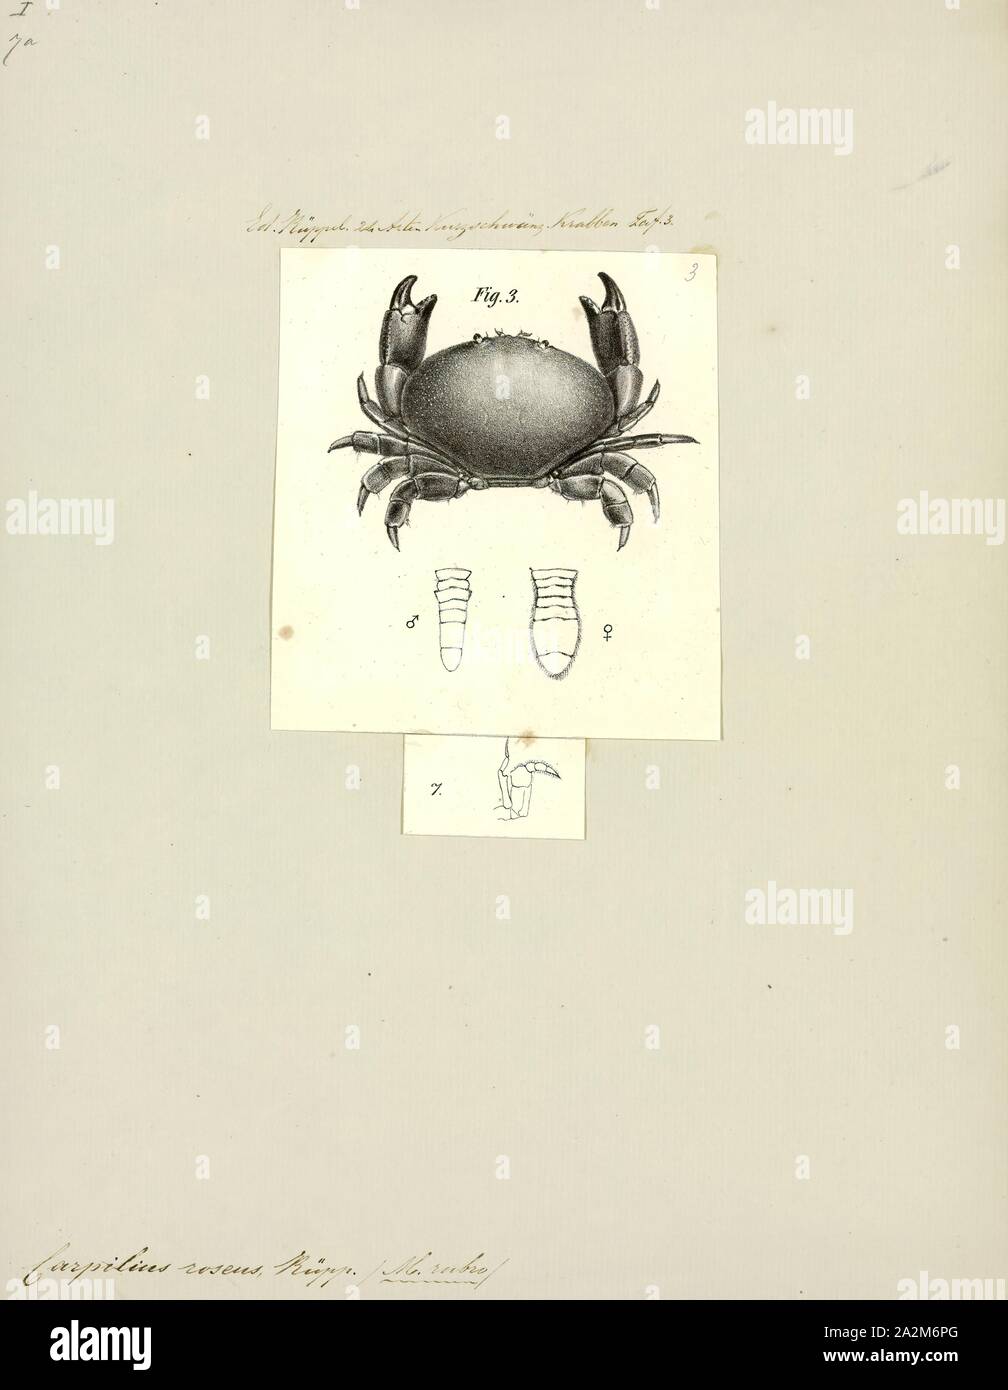 Carpilius roseus, Print, Carpilius is a genus of crabs in the family Carpiliidae Stock Photo